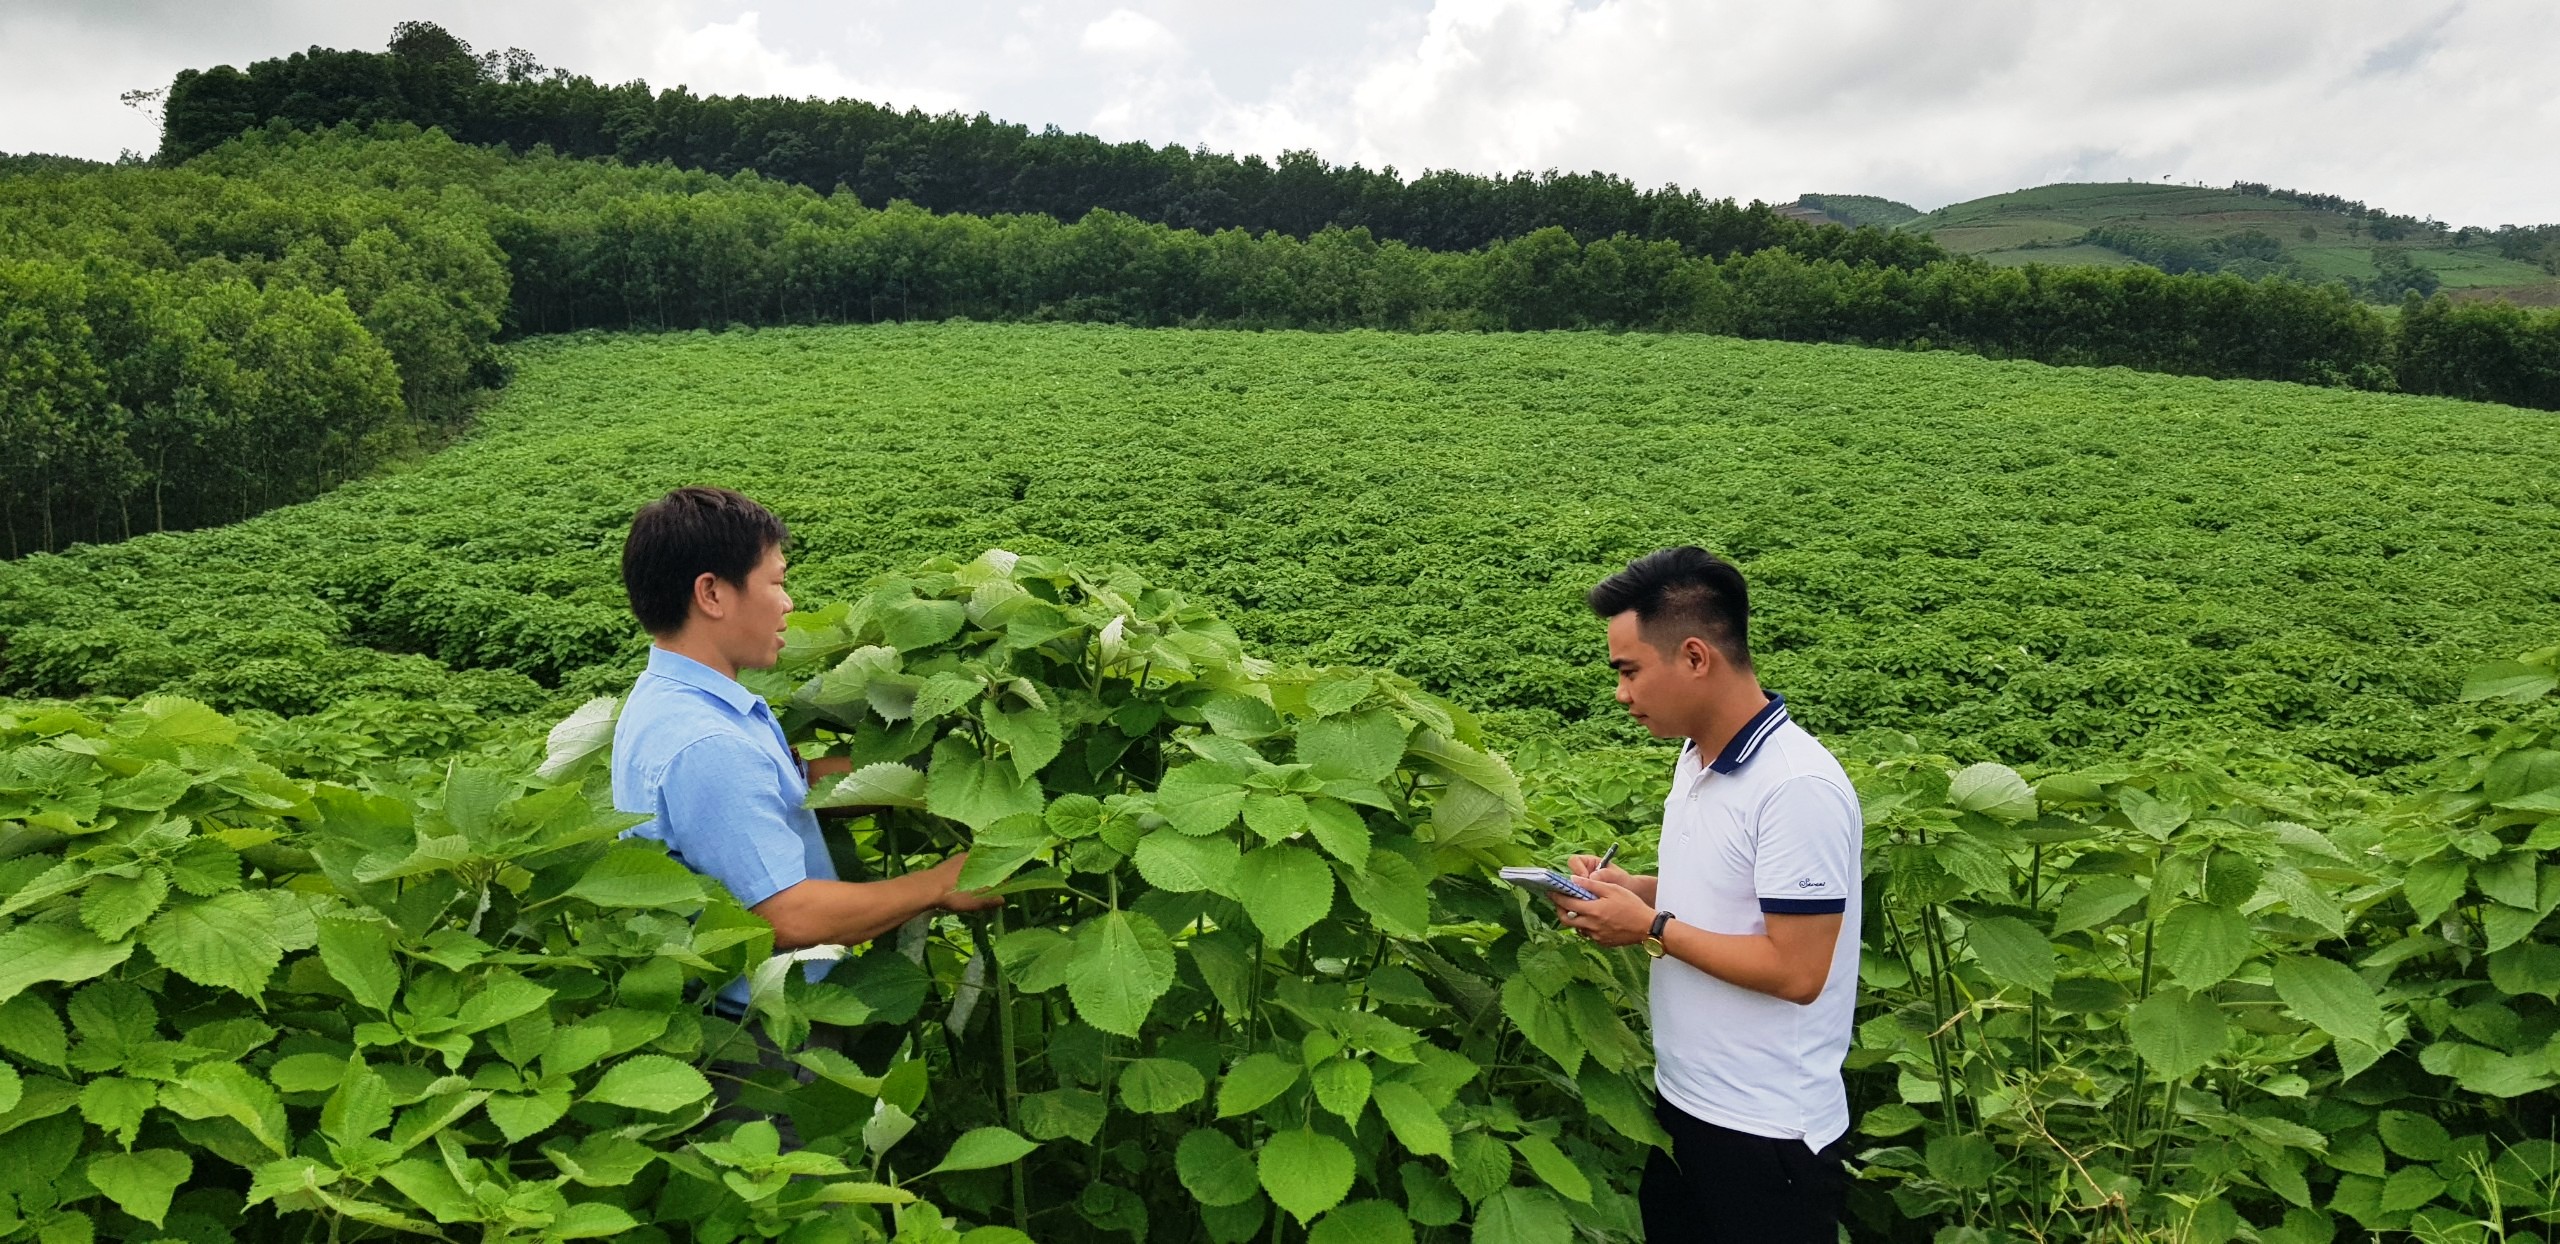 Anh Nguyễn Văn Loan - cán bộ địa chính nông nghiệp xã Cẩm Tú cùng phóng viên đến thăm khu đồi trồng gai của gia đình ông Nguyễn Đình Thảo, Trưởng thôn Thuần Lương.